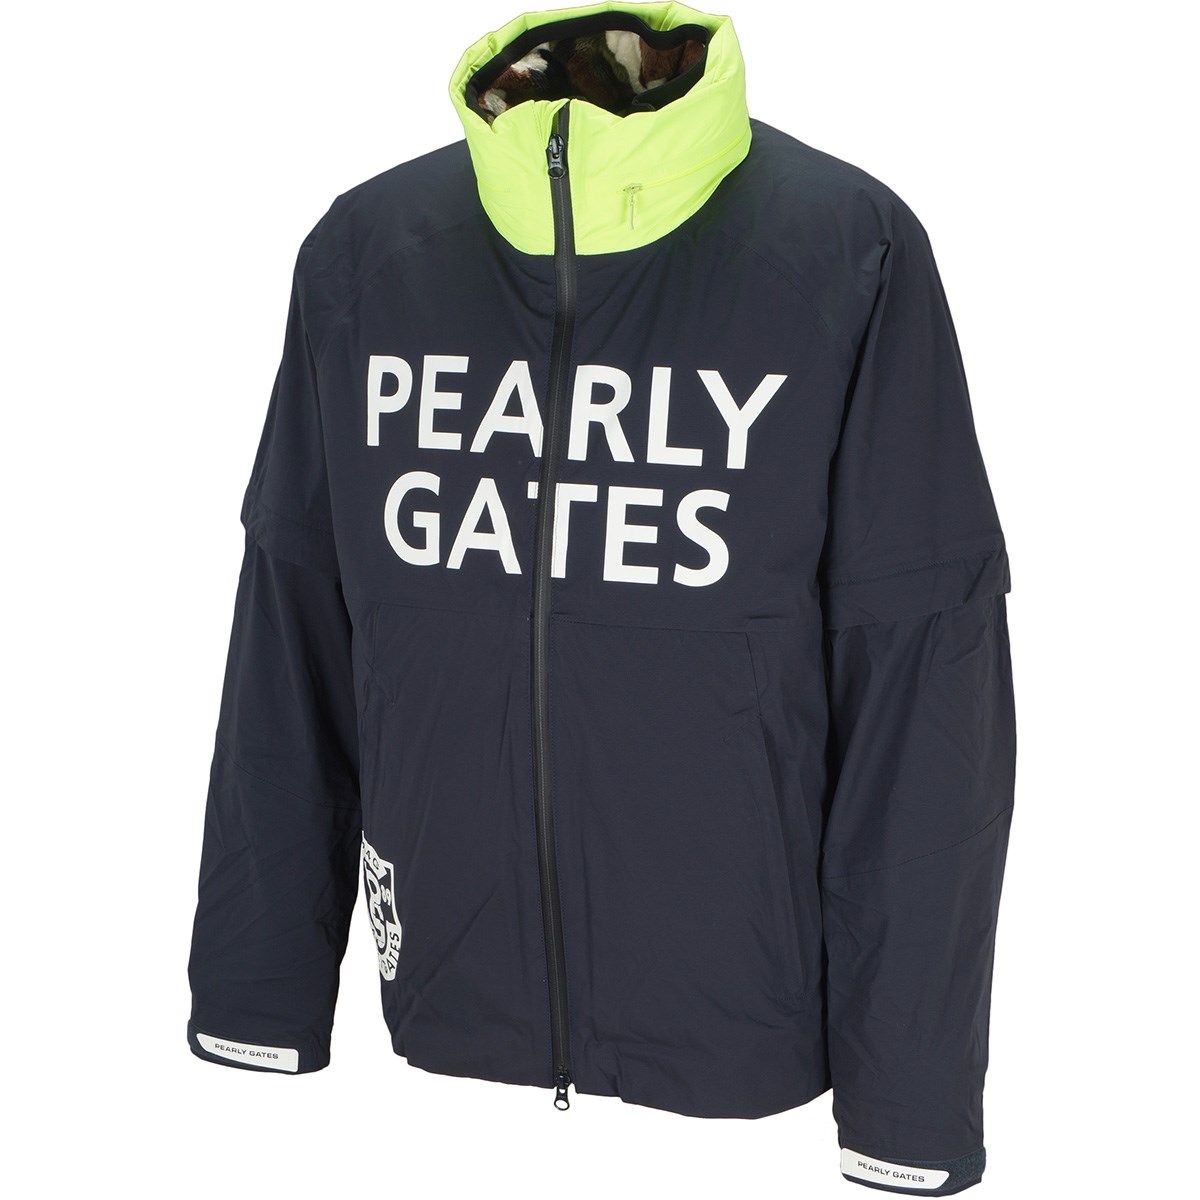 2年保証』 PEARLY GATES メンズ アウター - ウエア(男性用) - www.smithsfalls.ca